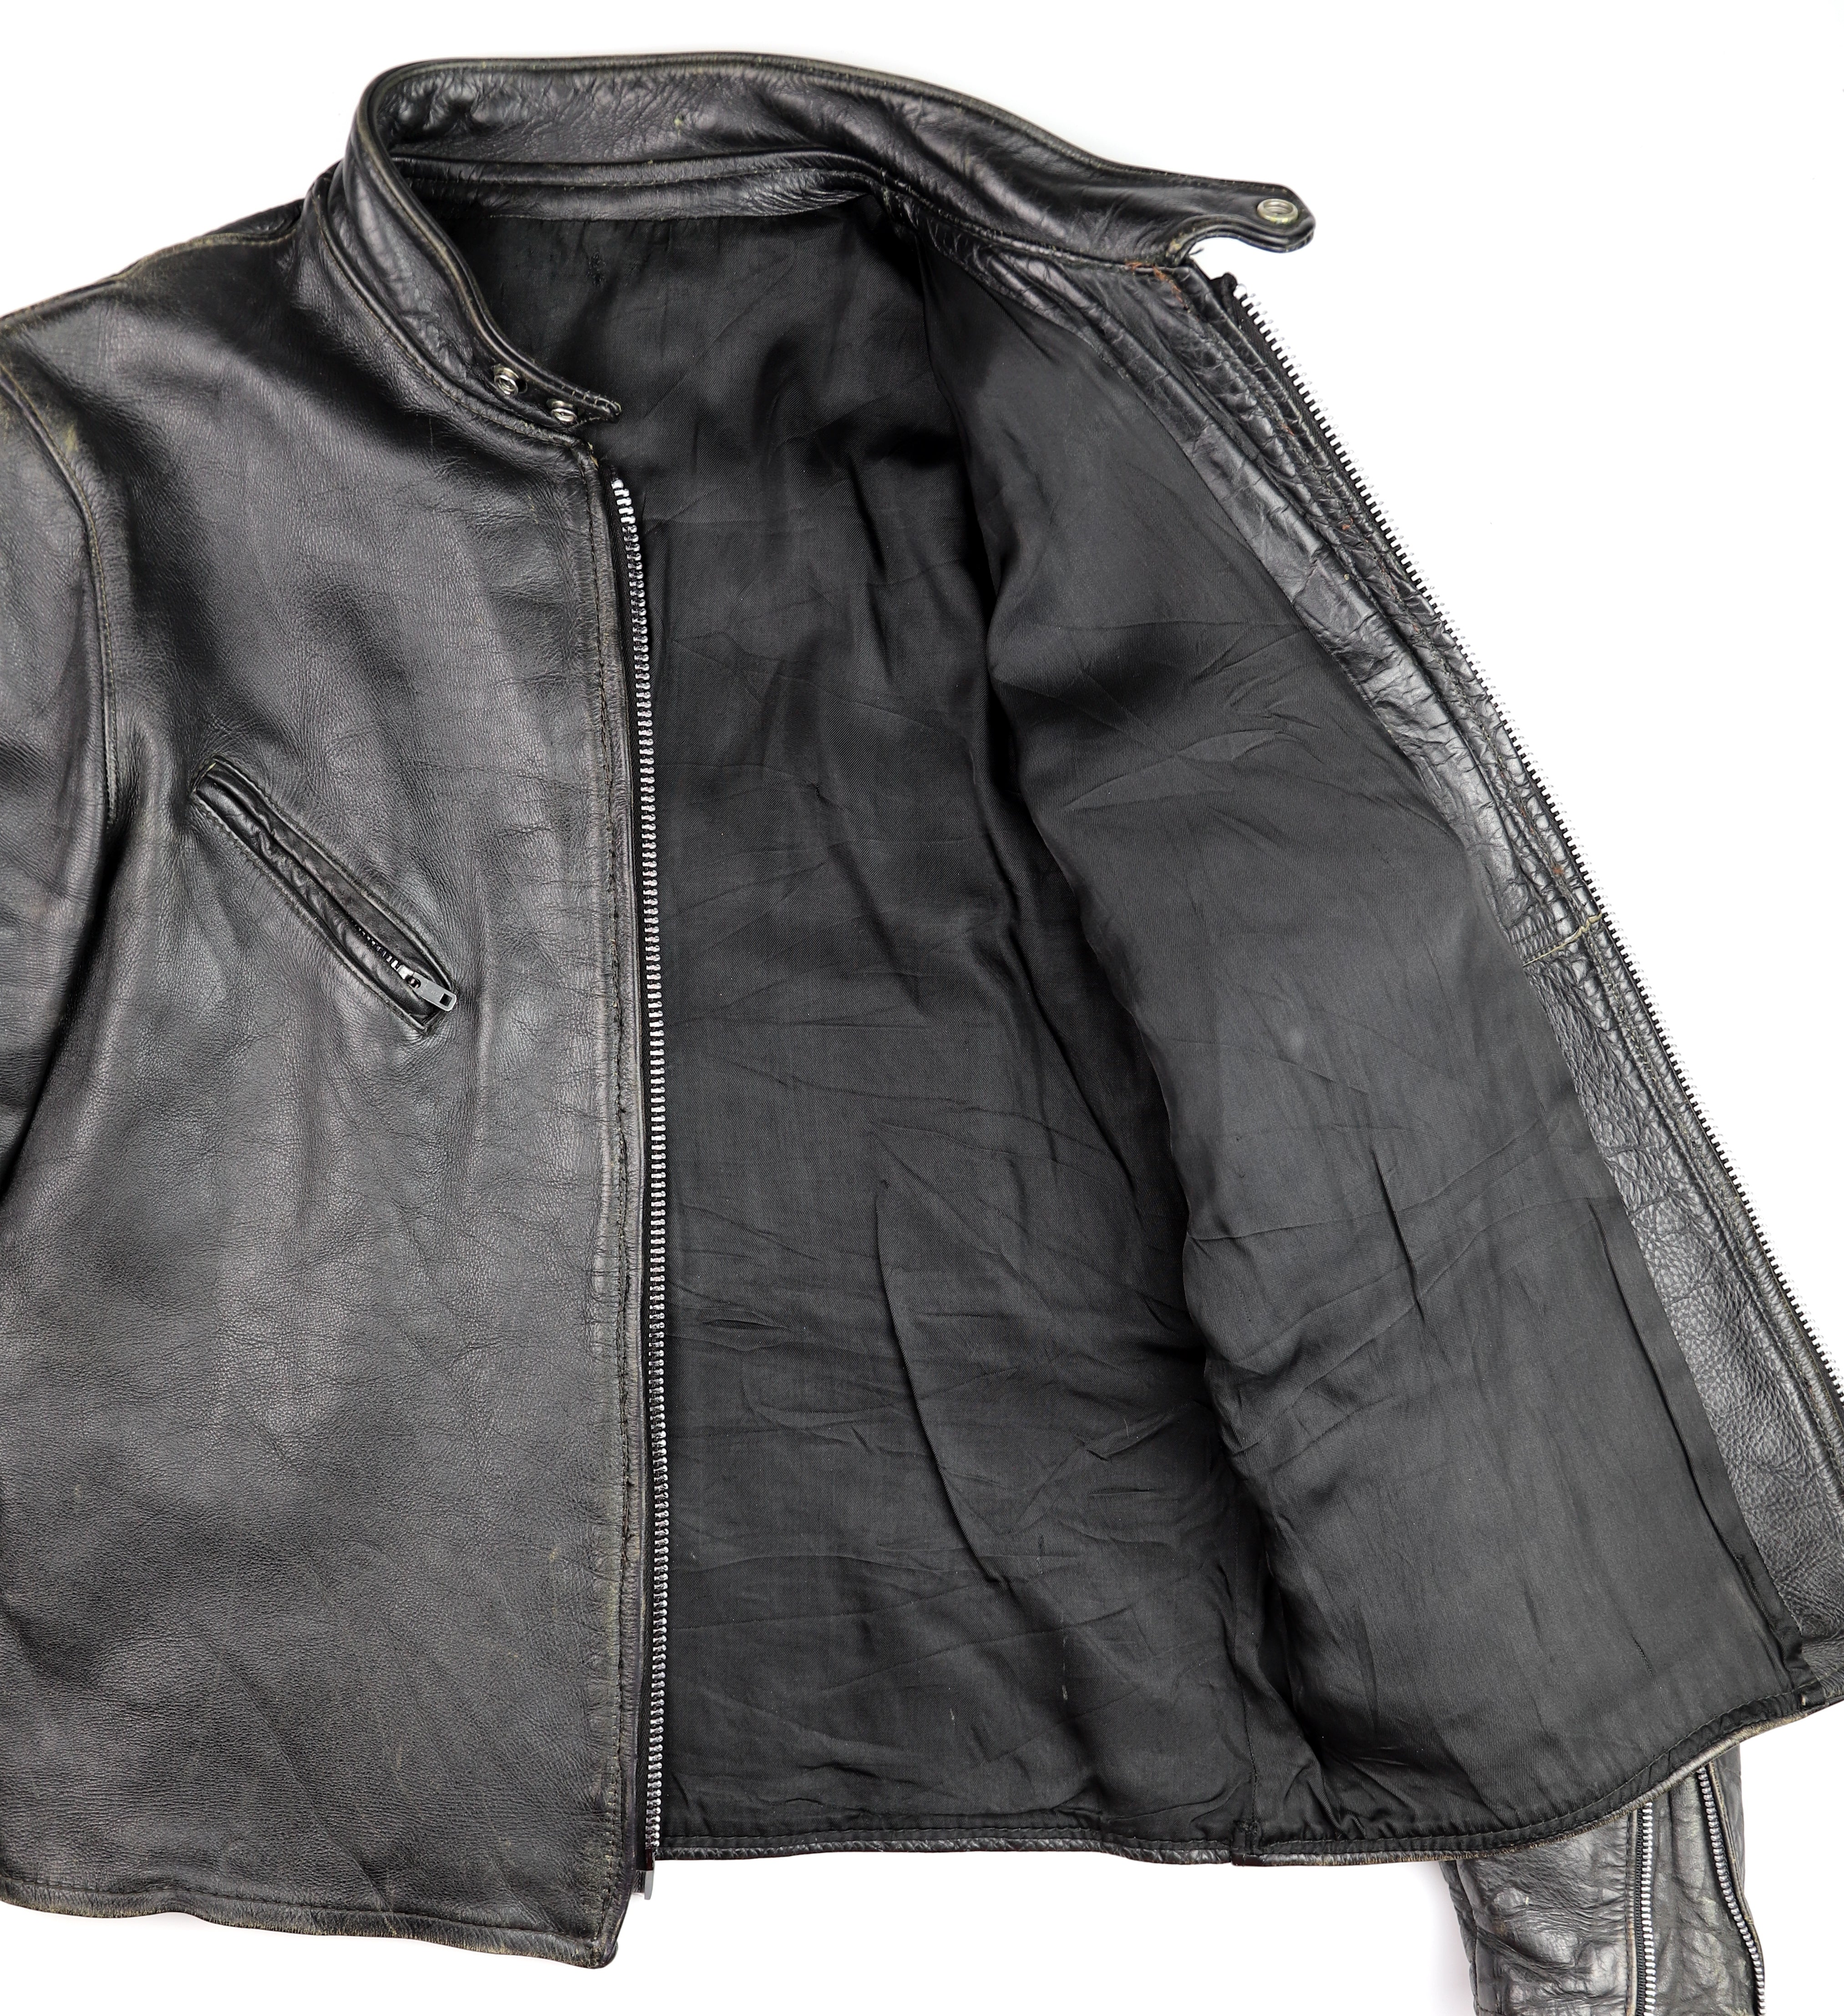 Vintage Cafe Racer Jacket, Black, size 42